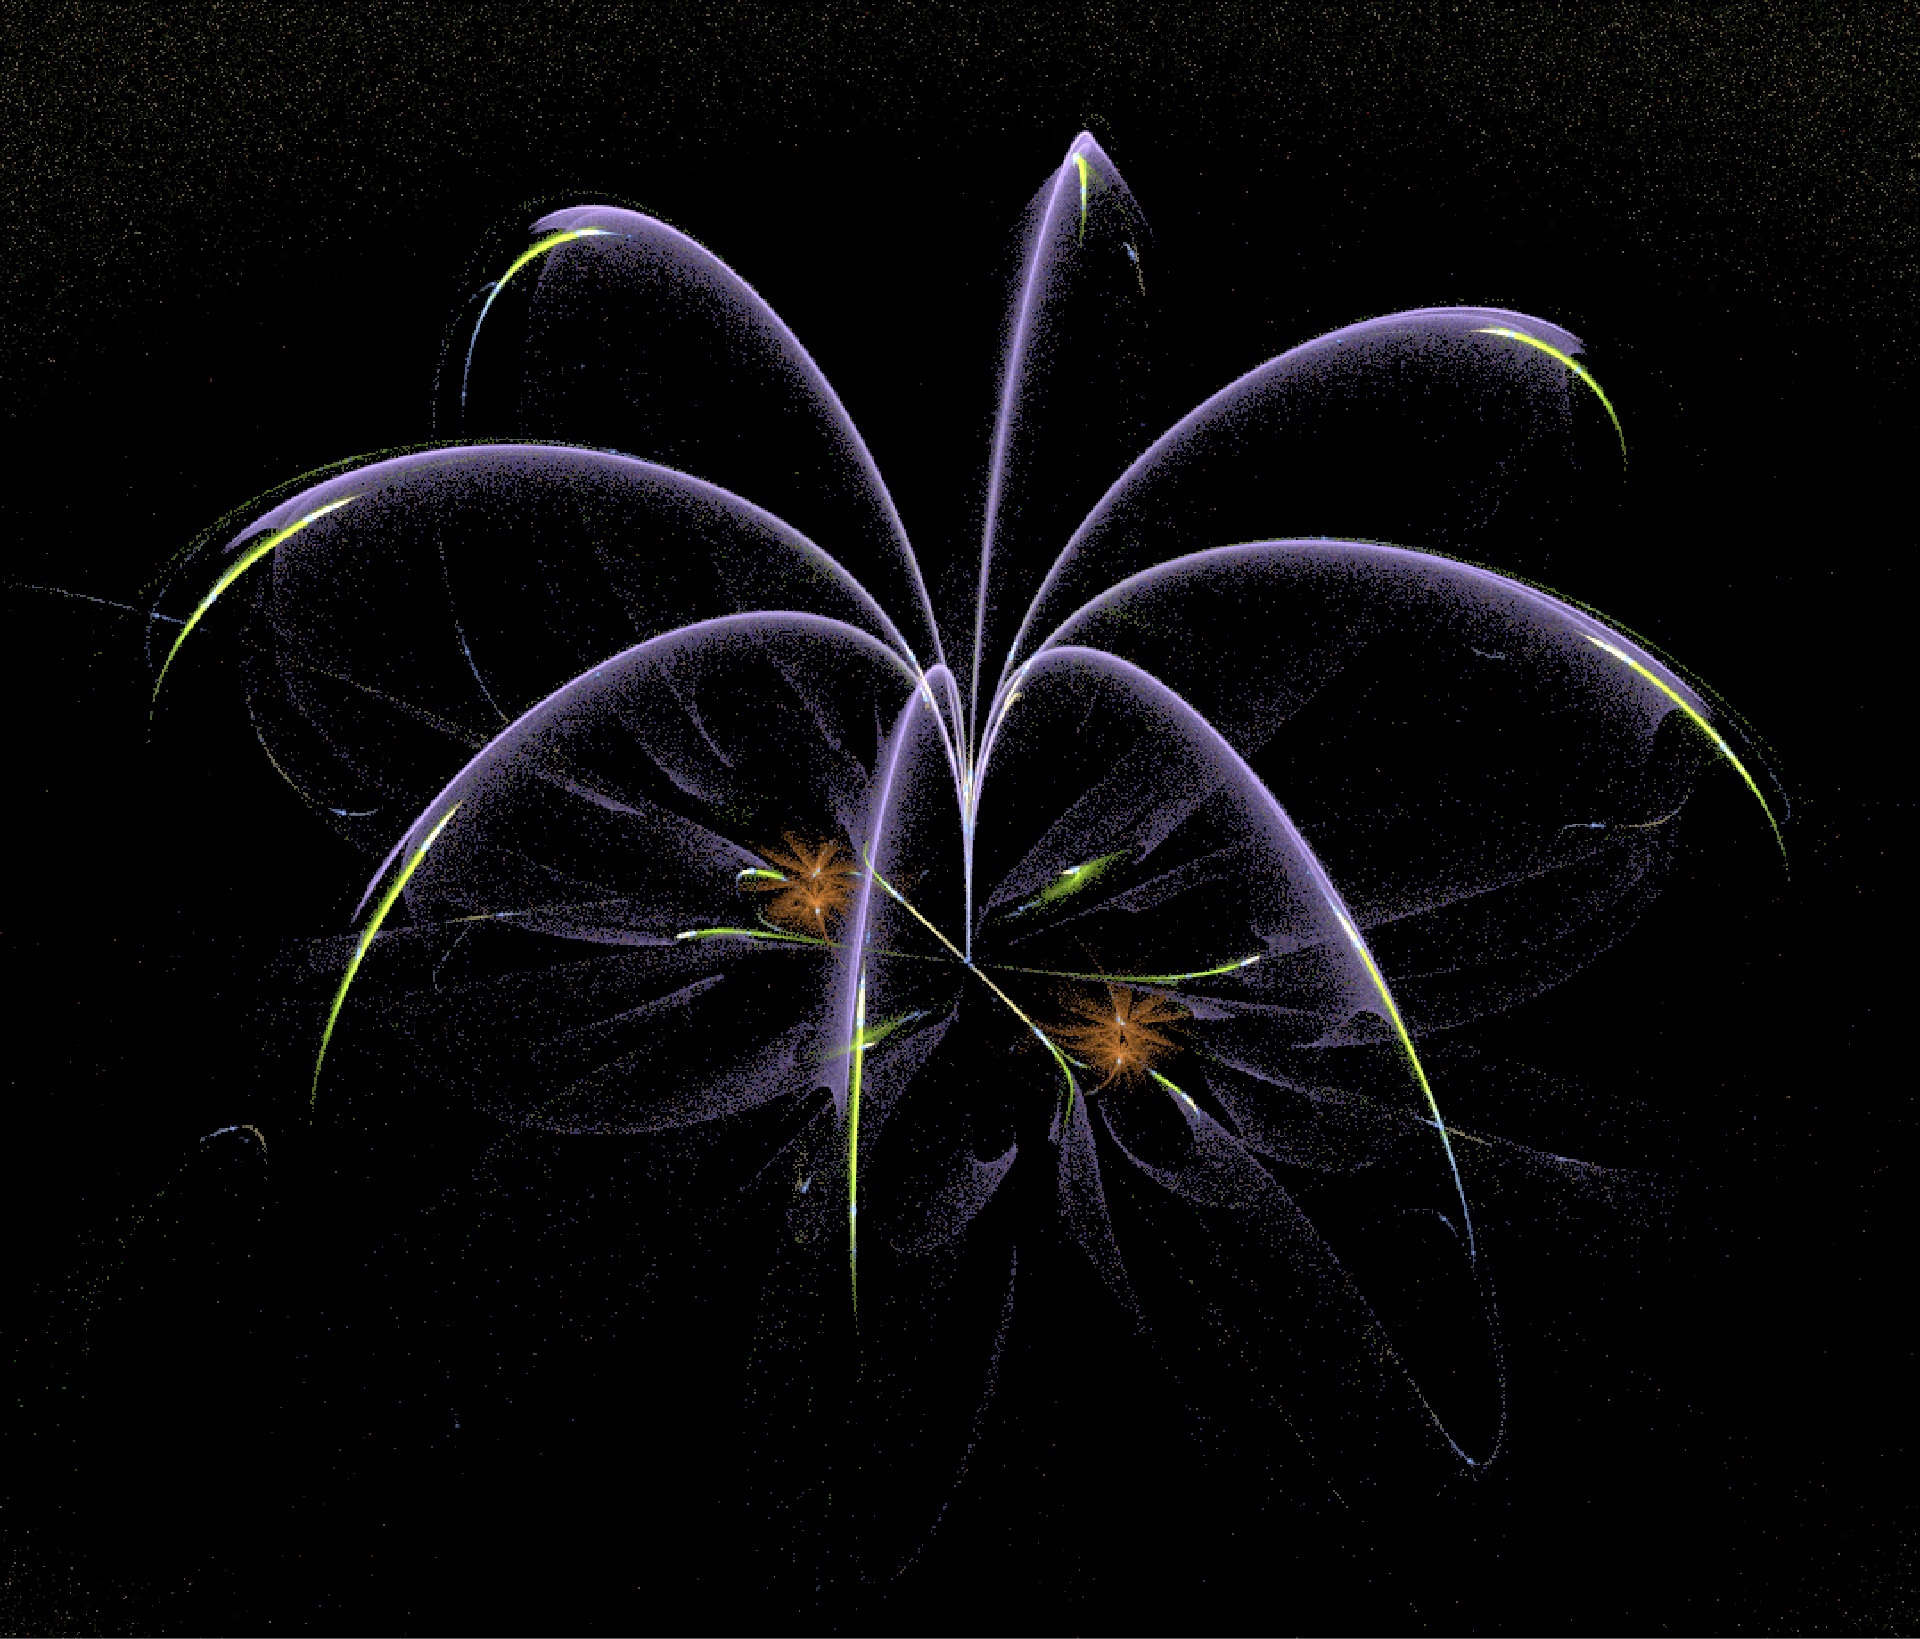 fractal amazing flower isolated on black background